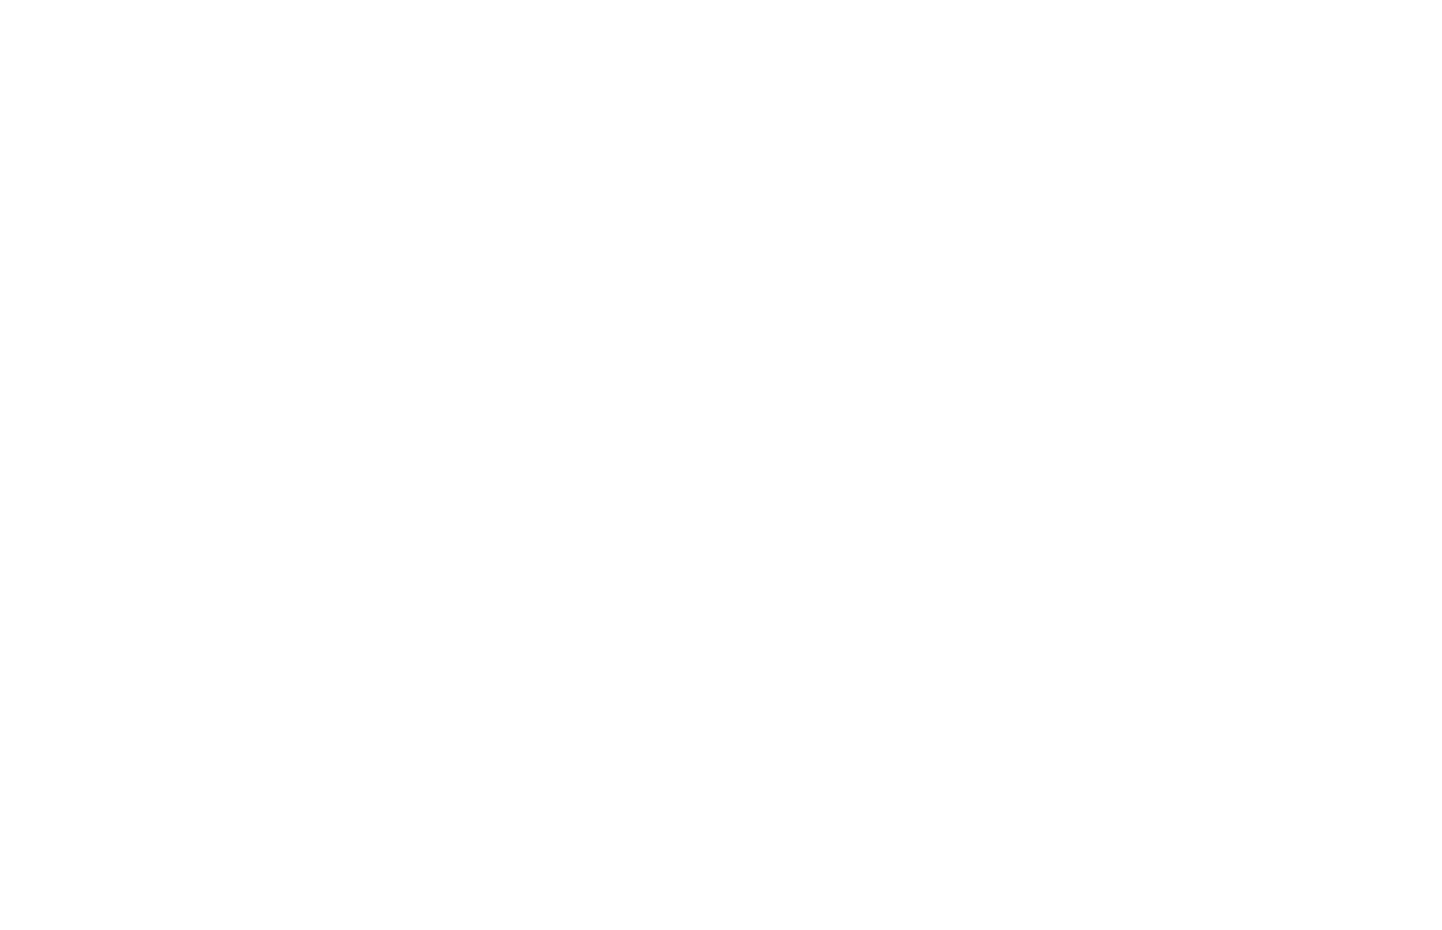 British Youth Opera